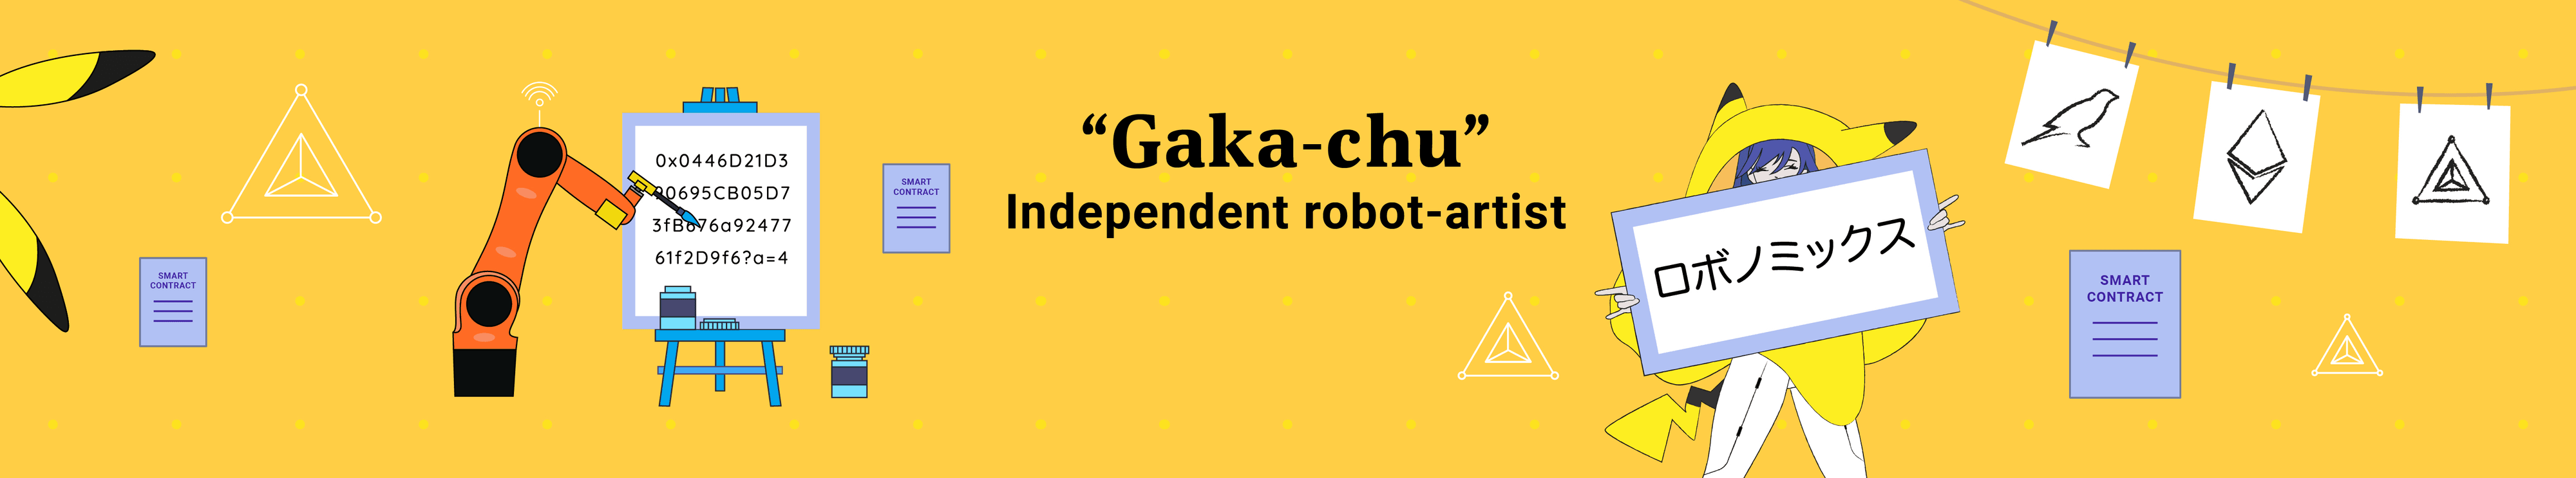 Gaka-Chu banner